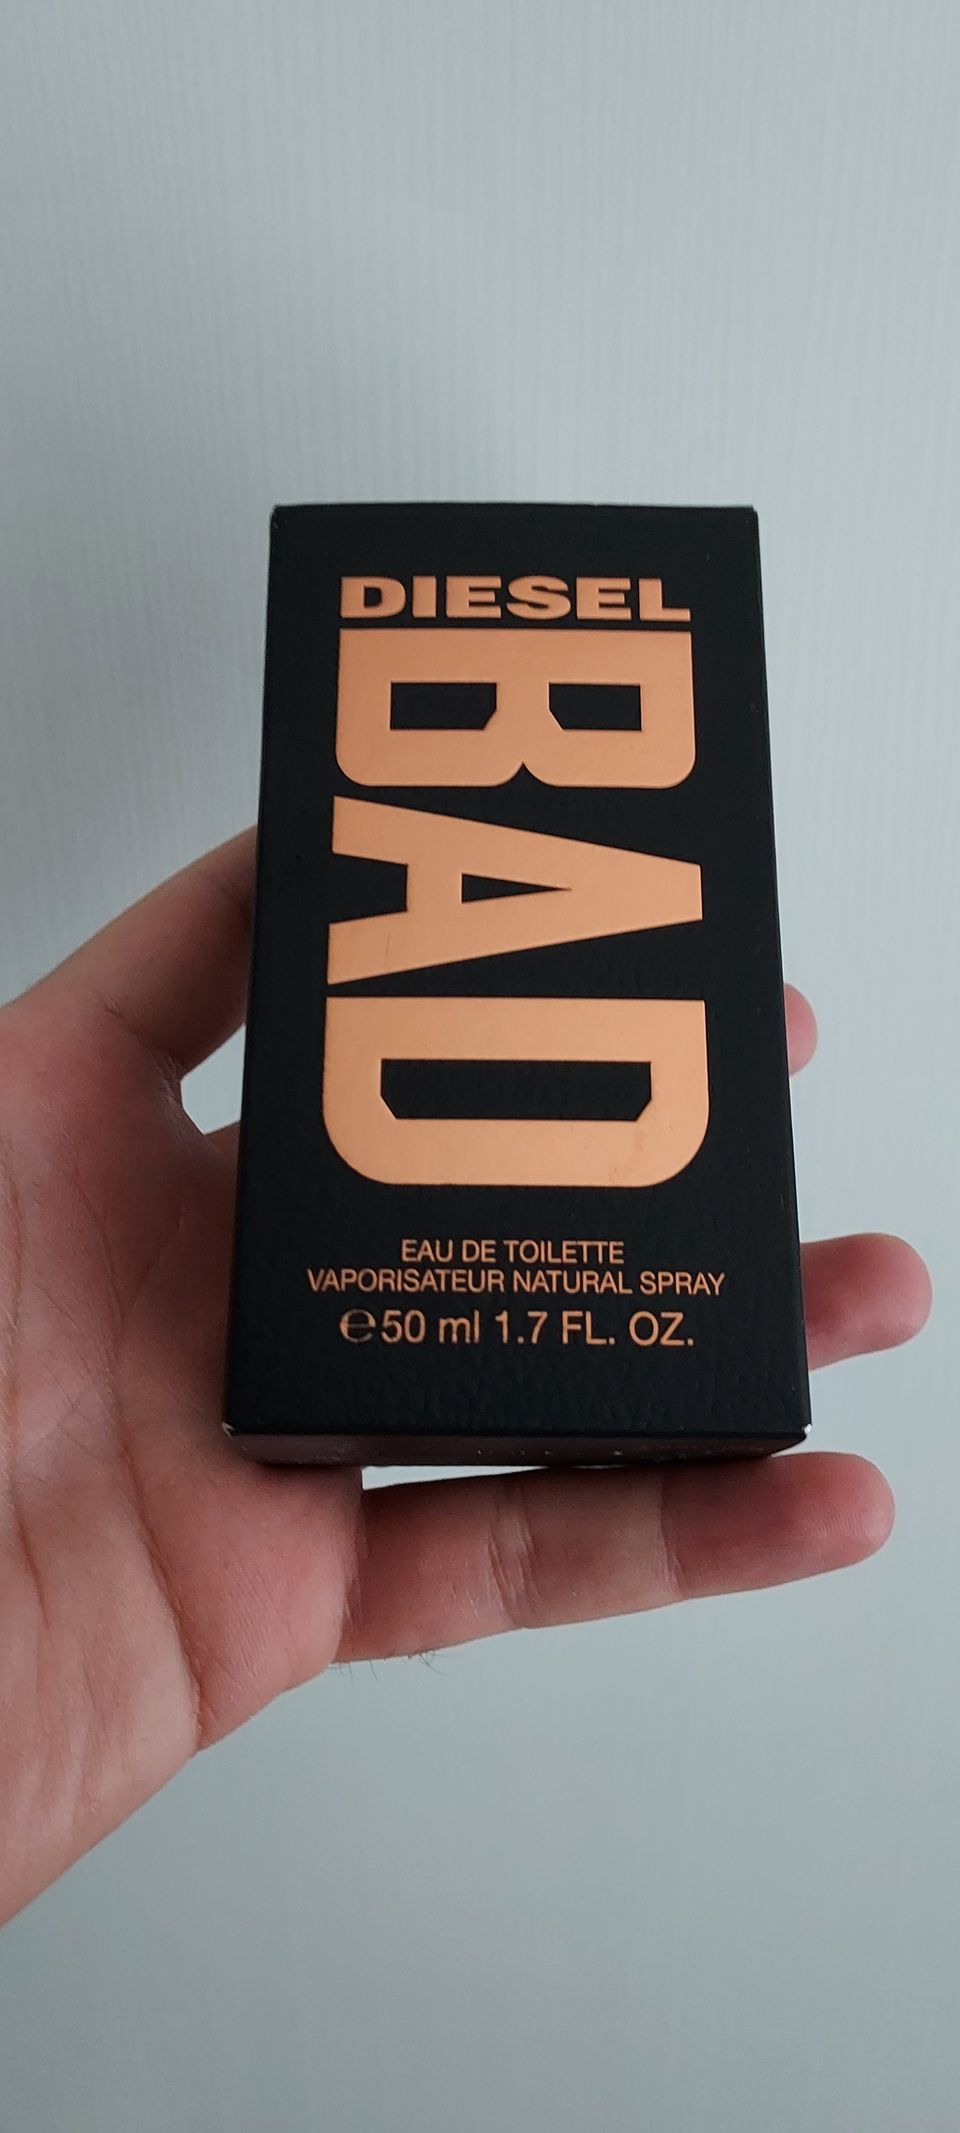 Diesel Bad hajuvesi 50ml